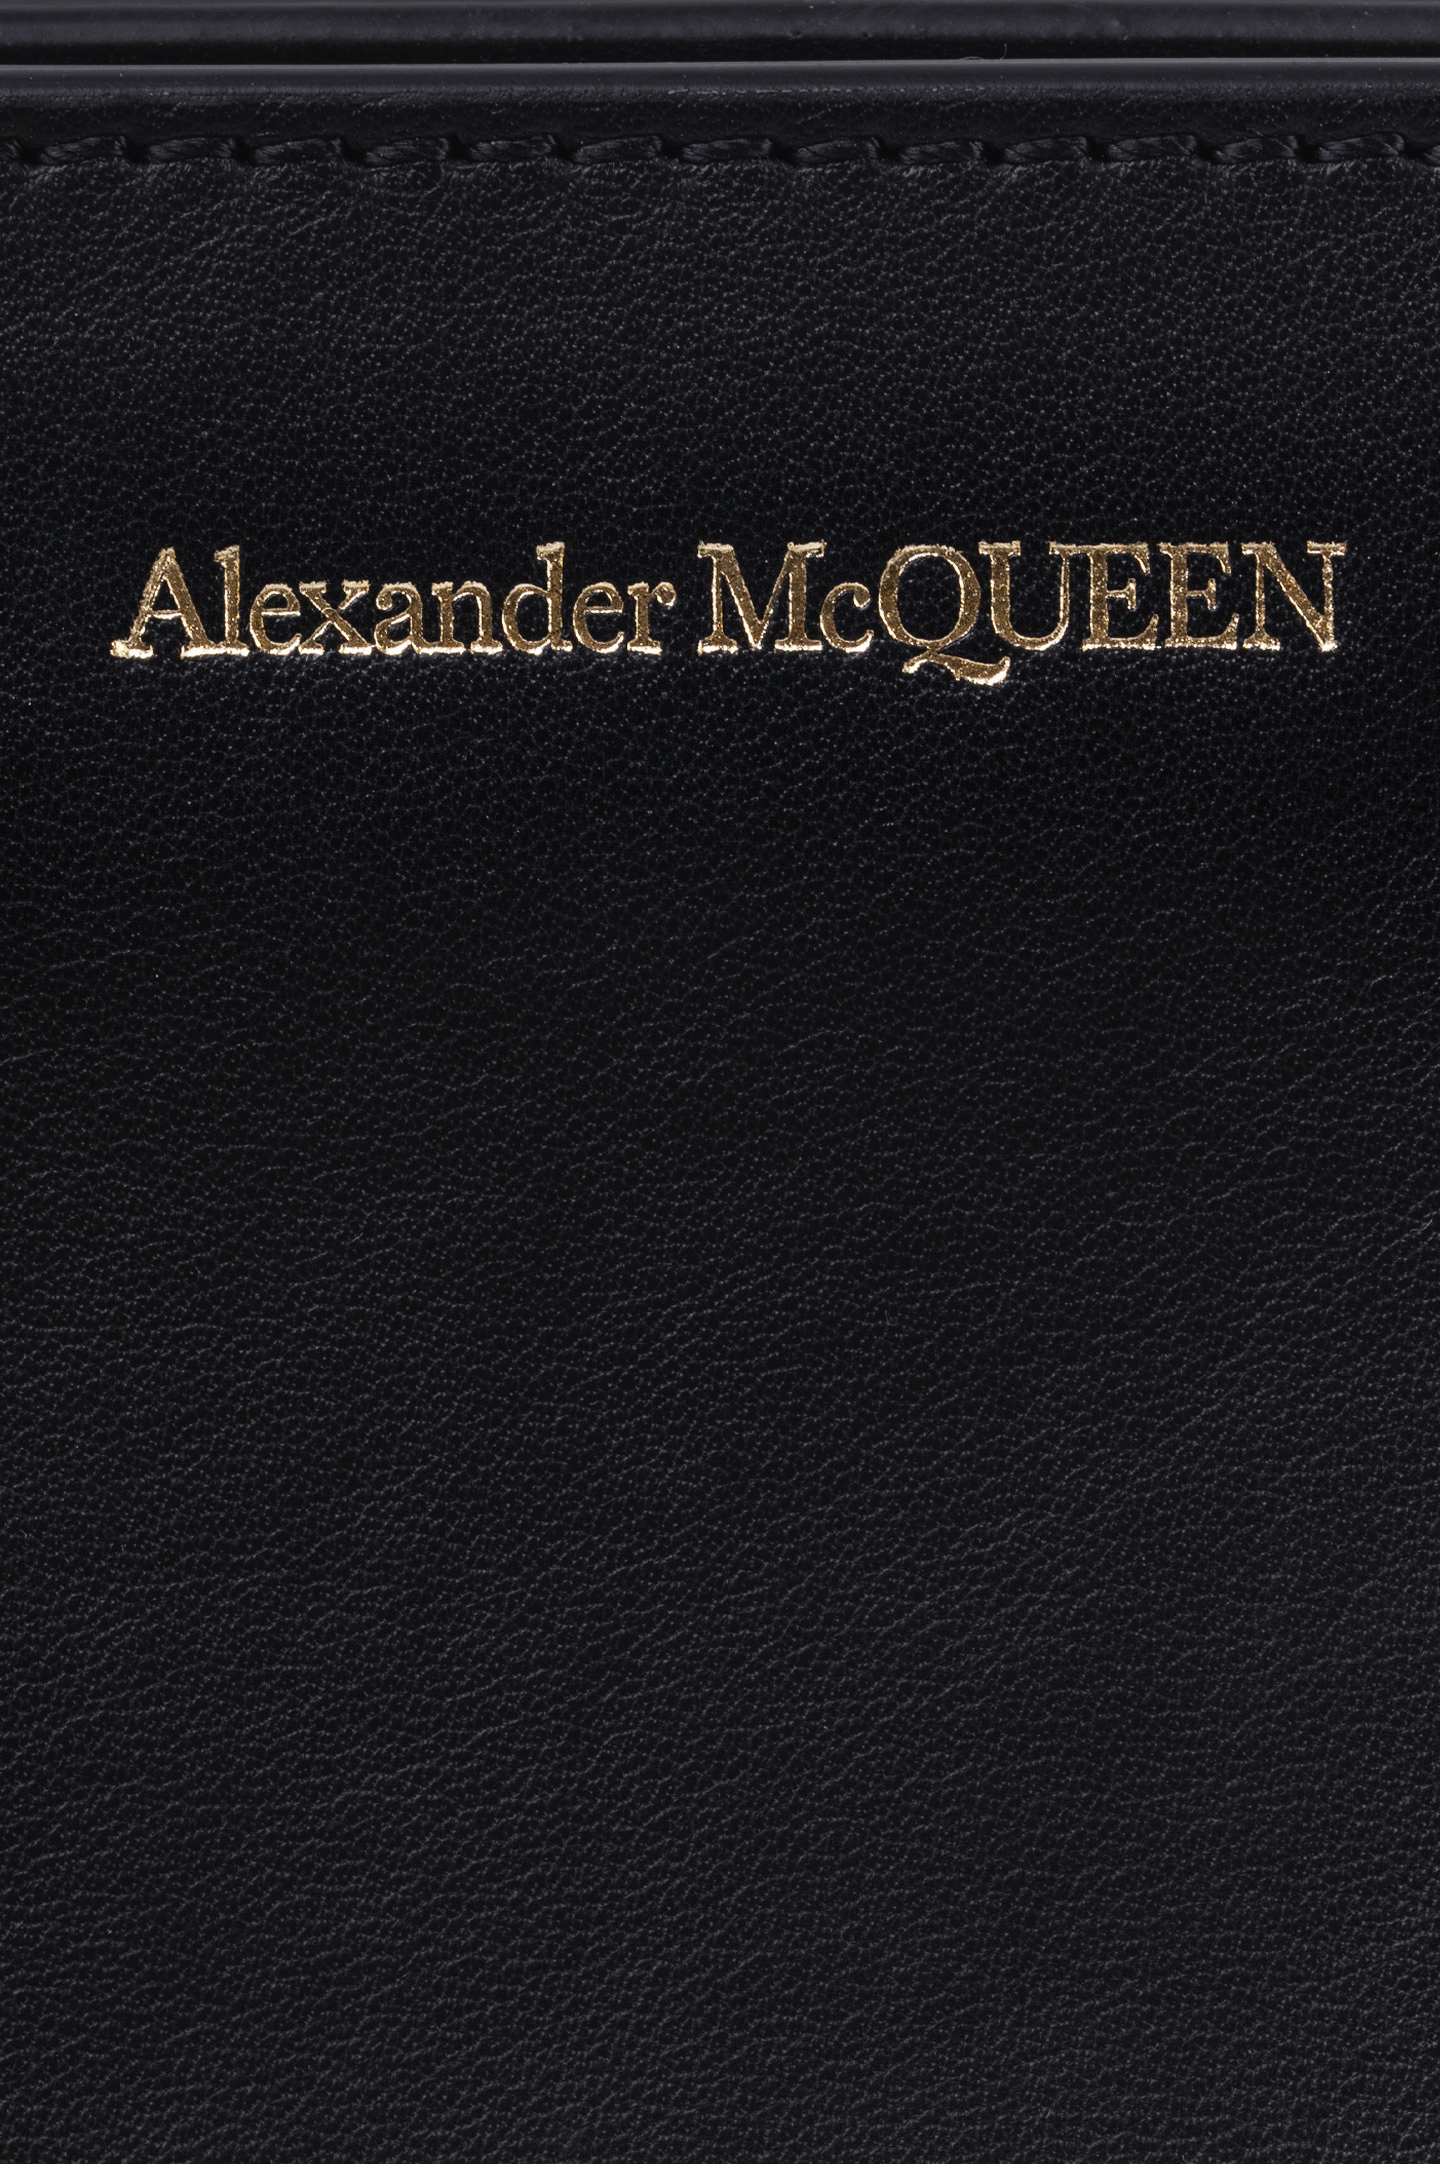 Сумка ALEXANDER MCQUEEN 656471 D78AA, цвет: Черный, Женский